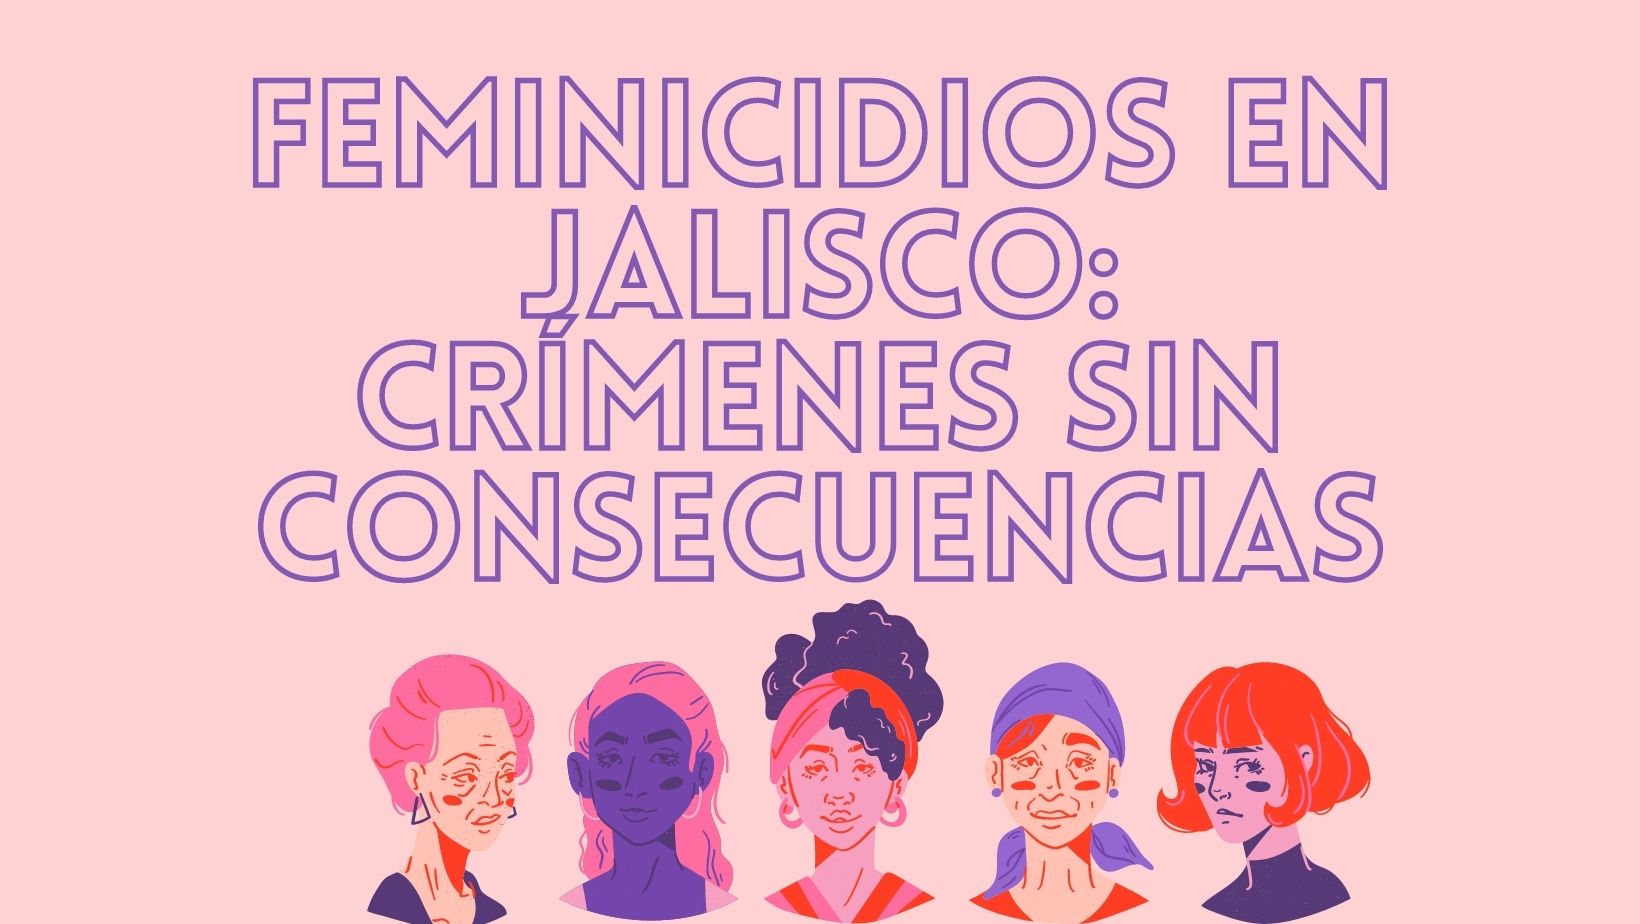 Feminicidios en Jalisco: Crímenes sin consecuencias